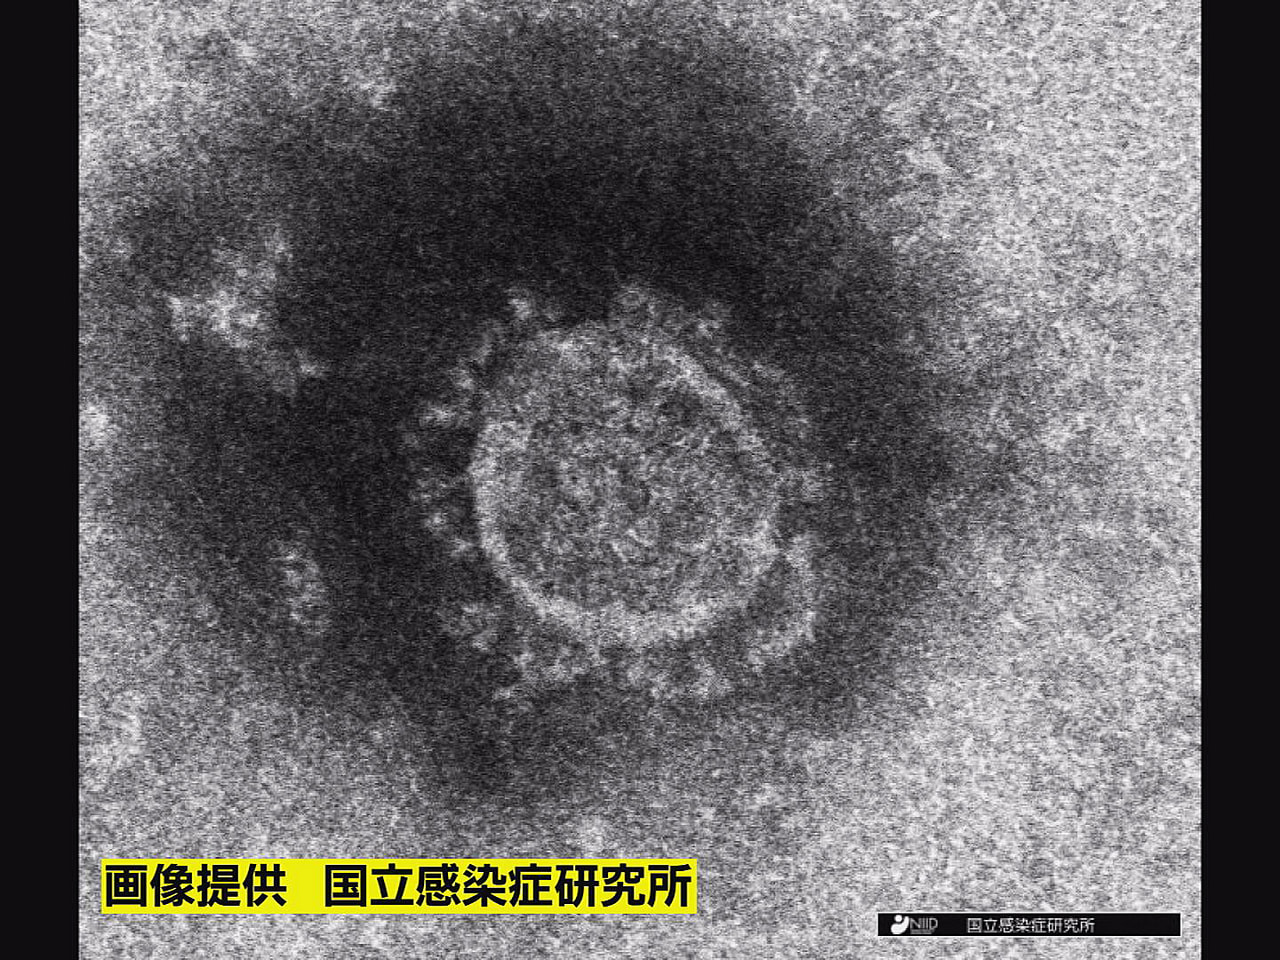 岐阜県は９日、新型コロナウイルスの新規感染者が４１０人確認されたと発表しました。...